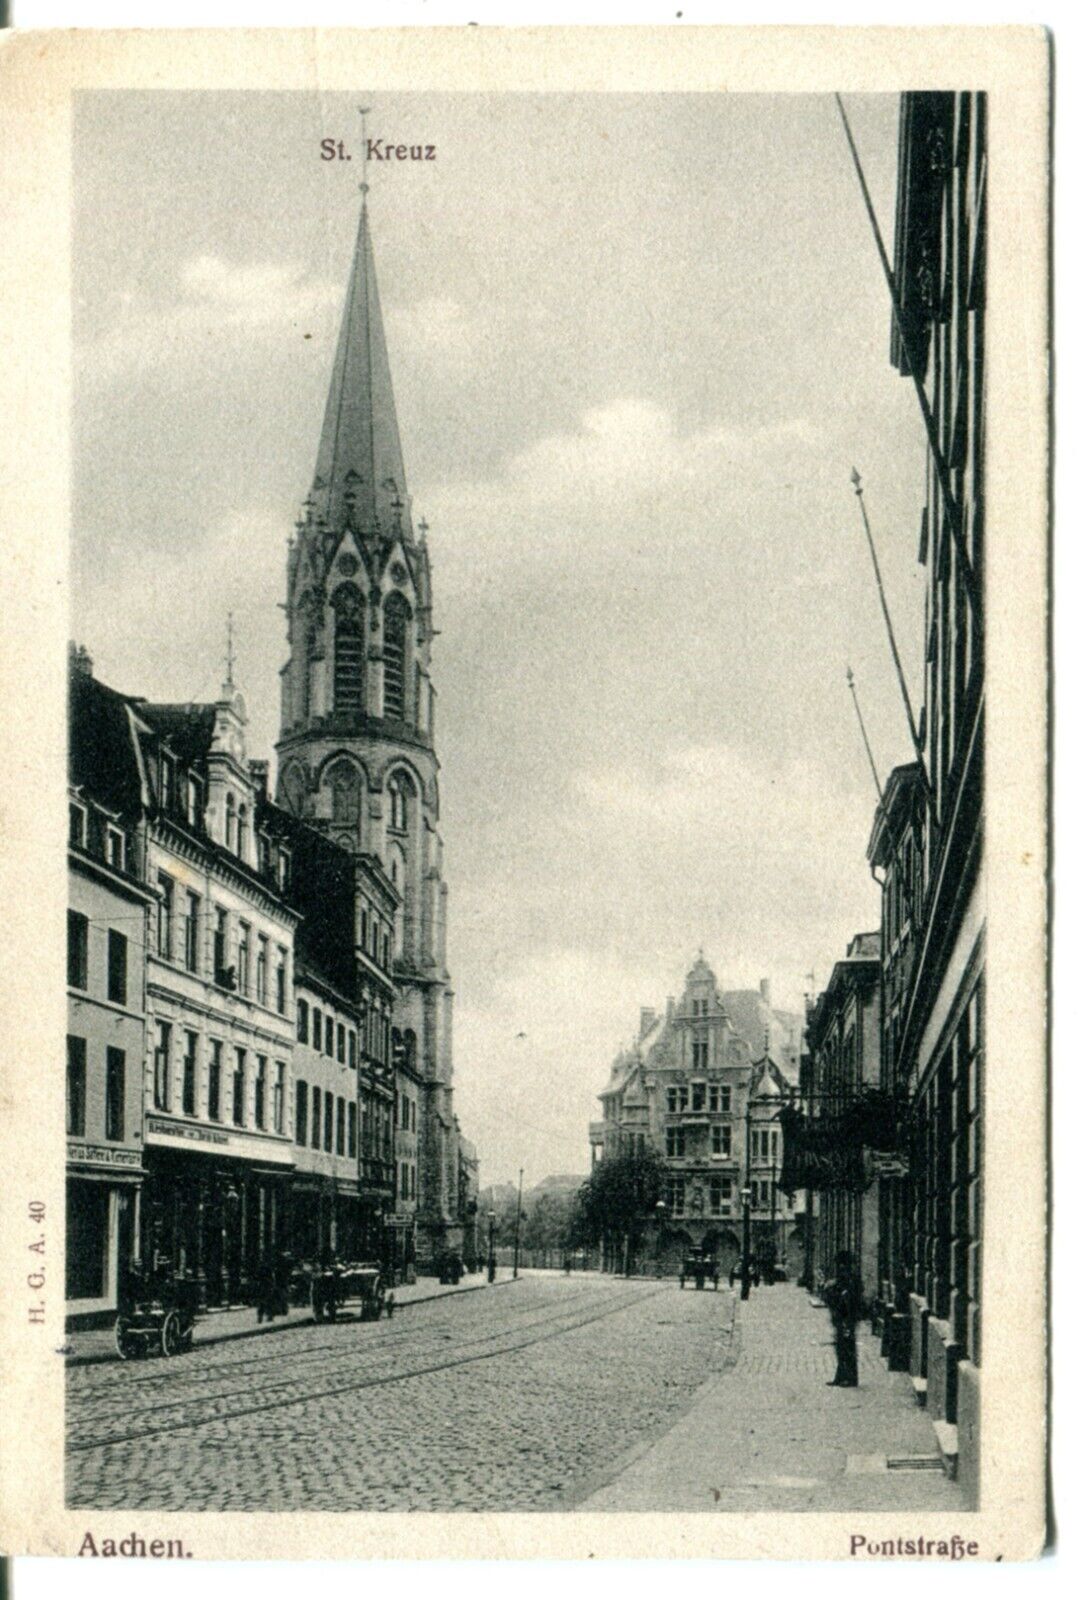 Germany AK Aachen 52062 - Pontstrasse St Kreuz 1905 cover NYC NY USA on postcard